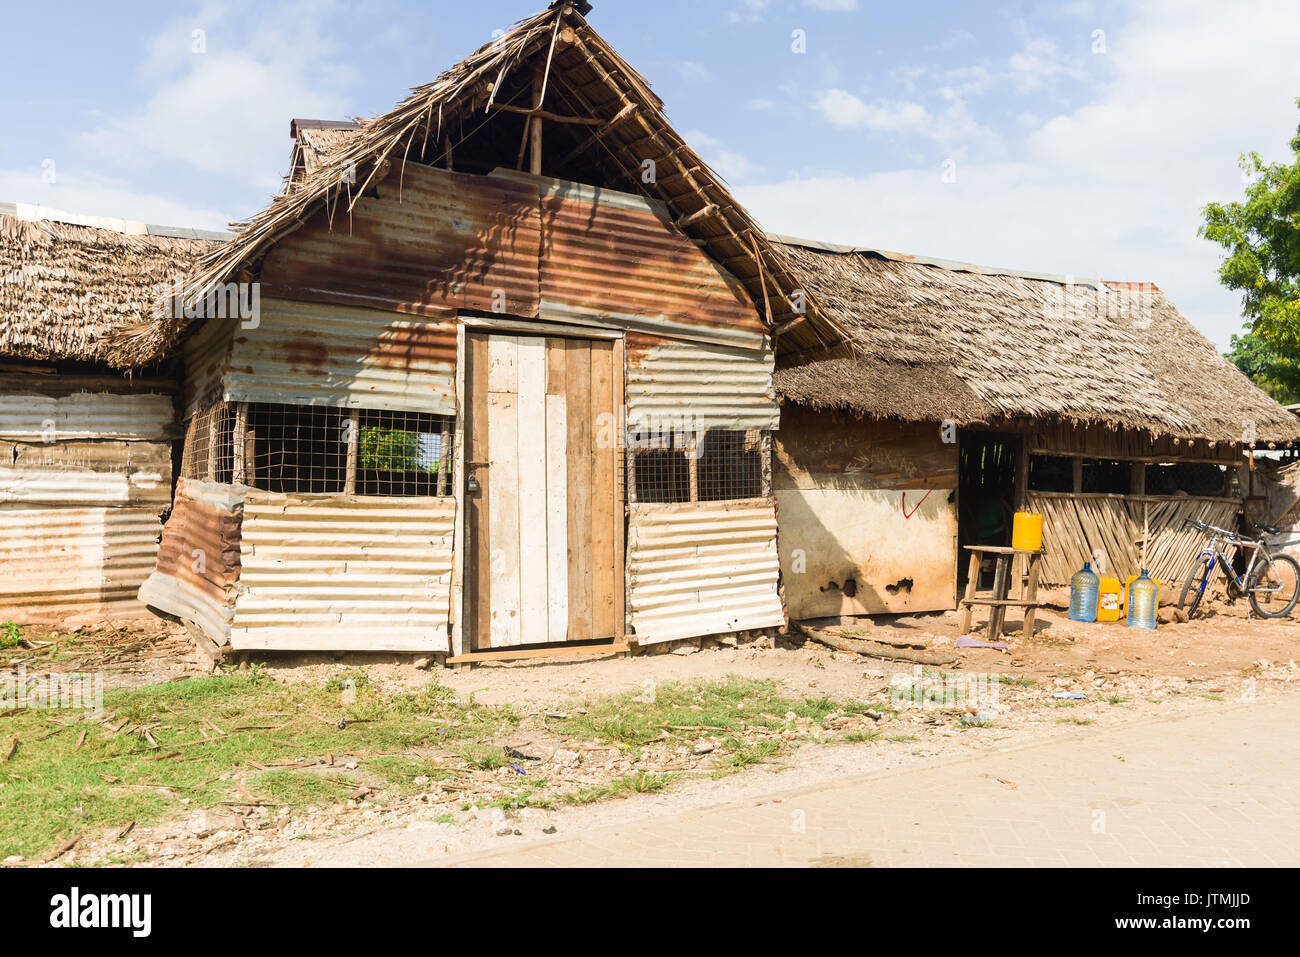 La tôle ondulée et cabane en bois avec des feuilles de palmier séchées un toit de chaume, au Kenya Banque D'Images